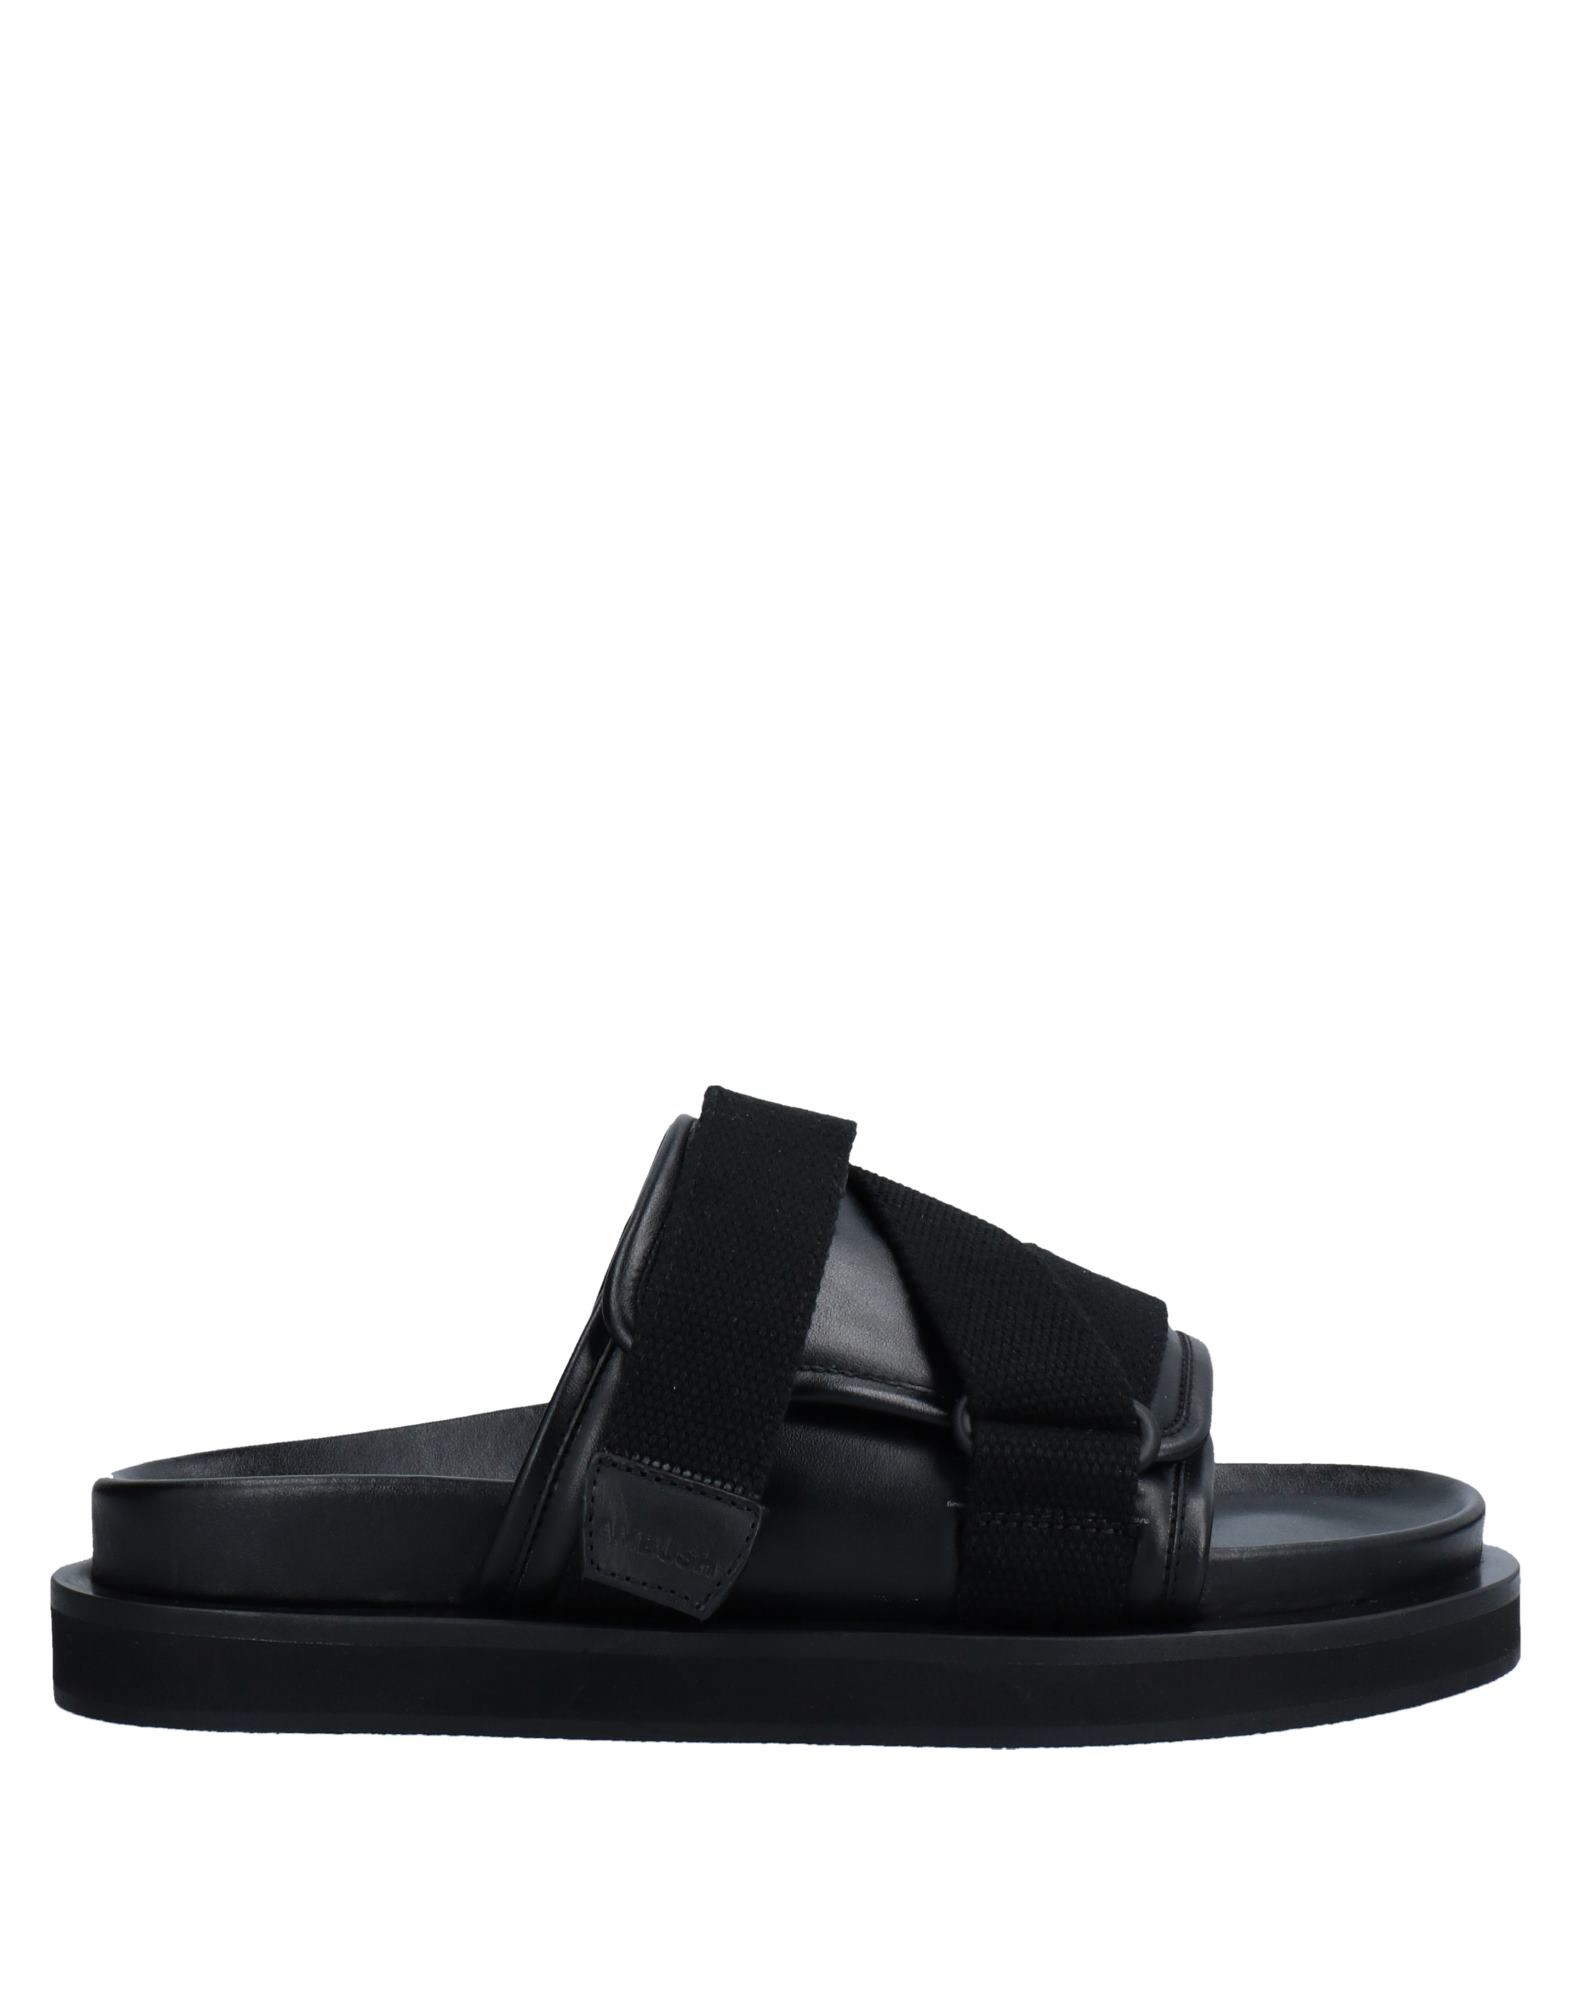 Shop Ambush Man Sandals Black Size 5 Soft Leather